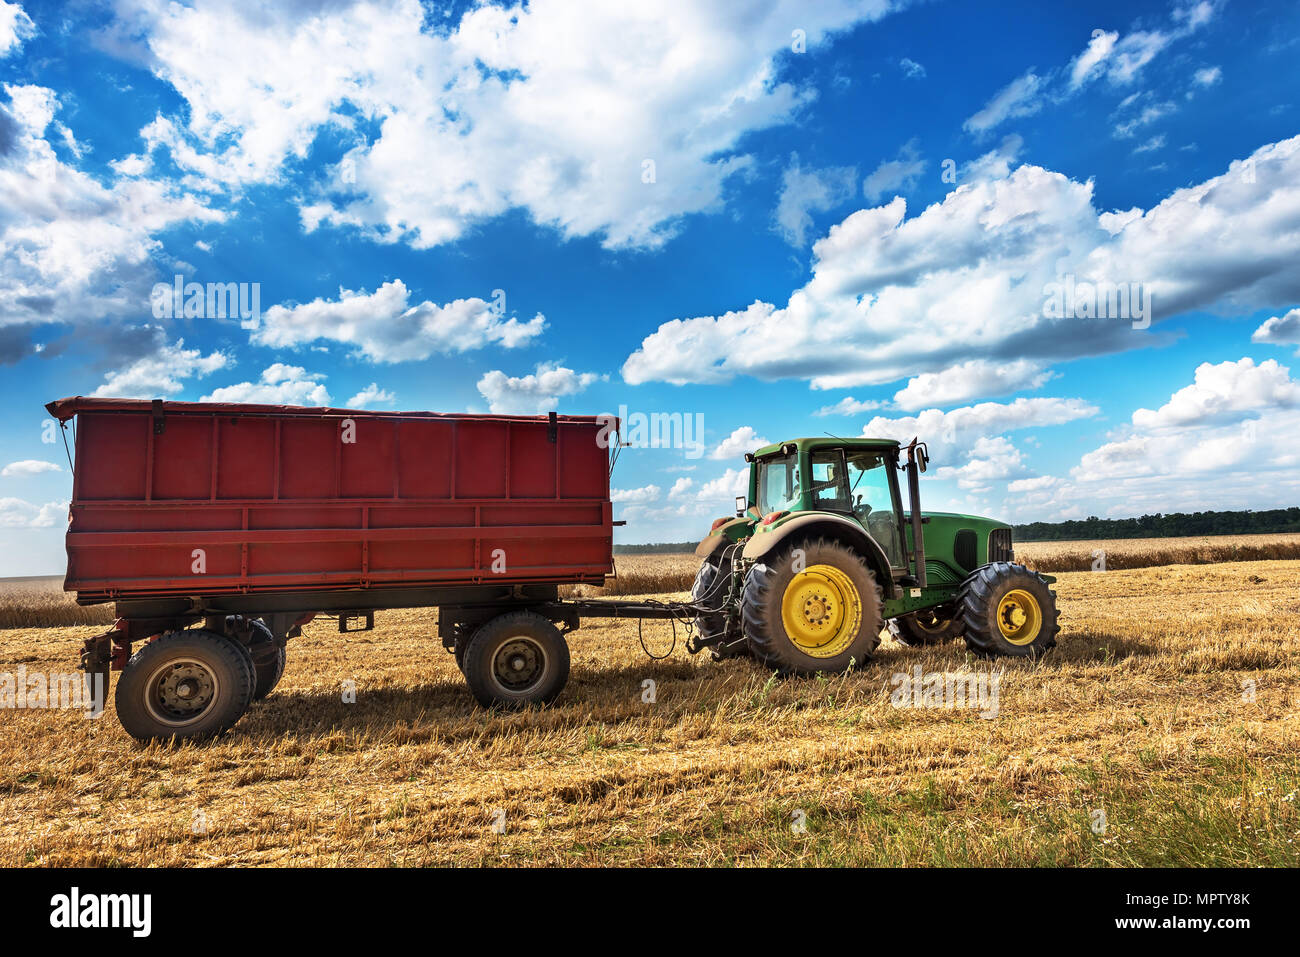 Dobritsch, Bulgarien - Juli 08: Moderne John Deere Traktor auf dem Feld in der Nähe der Stadt Dobrich, grünen Traktor auf den landwirtschaftlichen Bereich an sonnigen Sommertagen Stockfoto